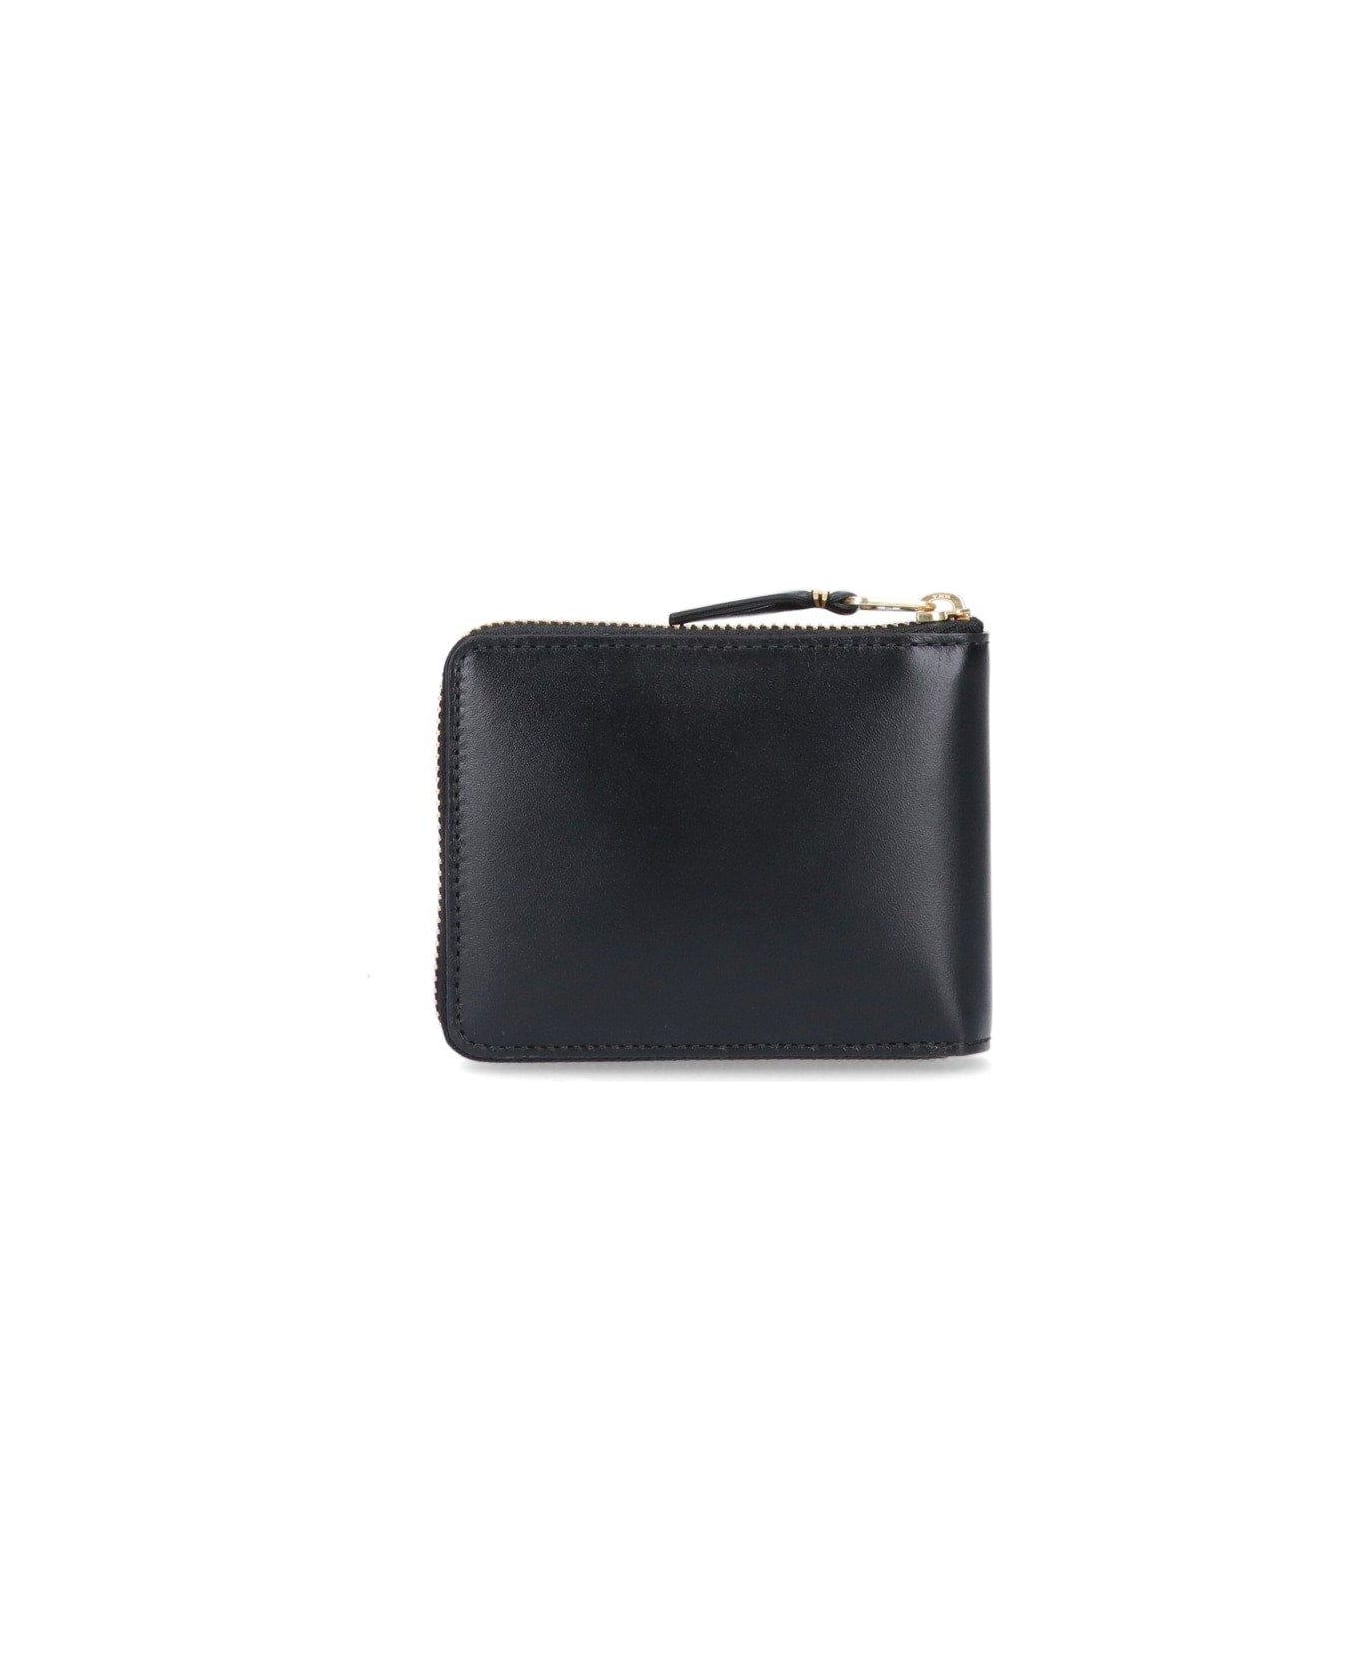 Comme des Garçons Wallet Classic Line Zipped Wallet - Black 財布